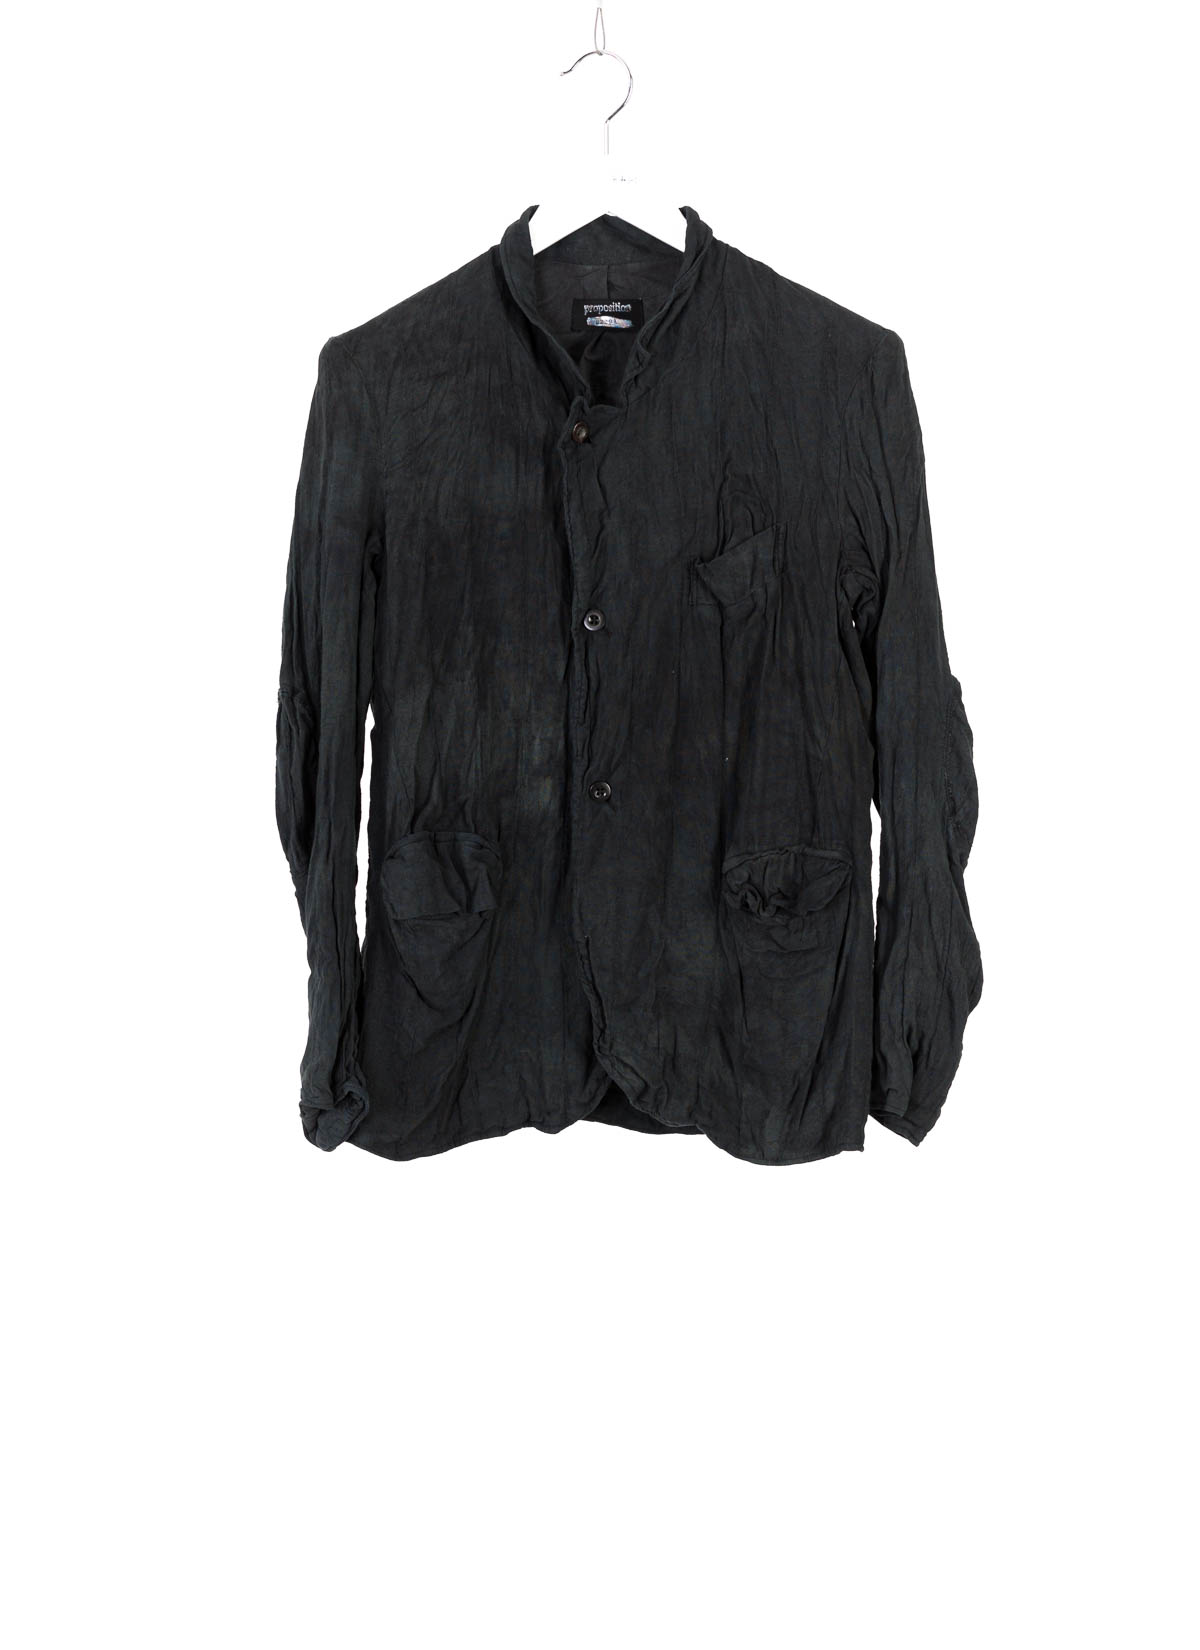 hide-m | CLOTHING Jacket, black hand dyed blazer